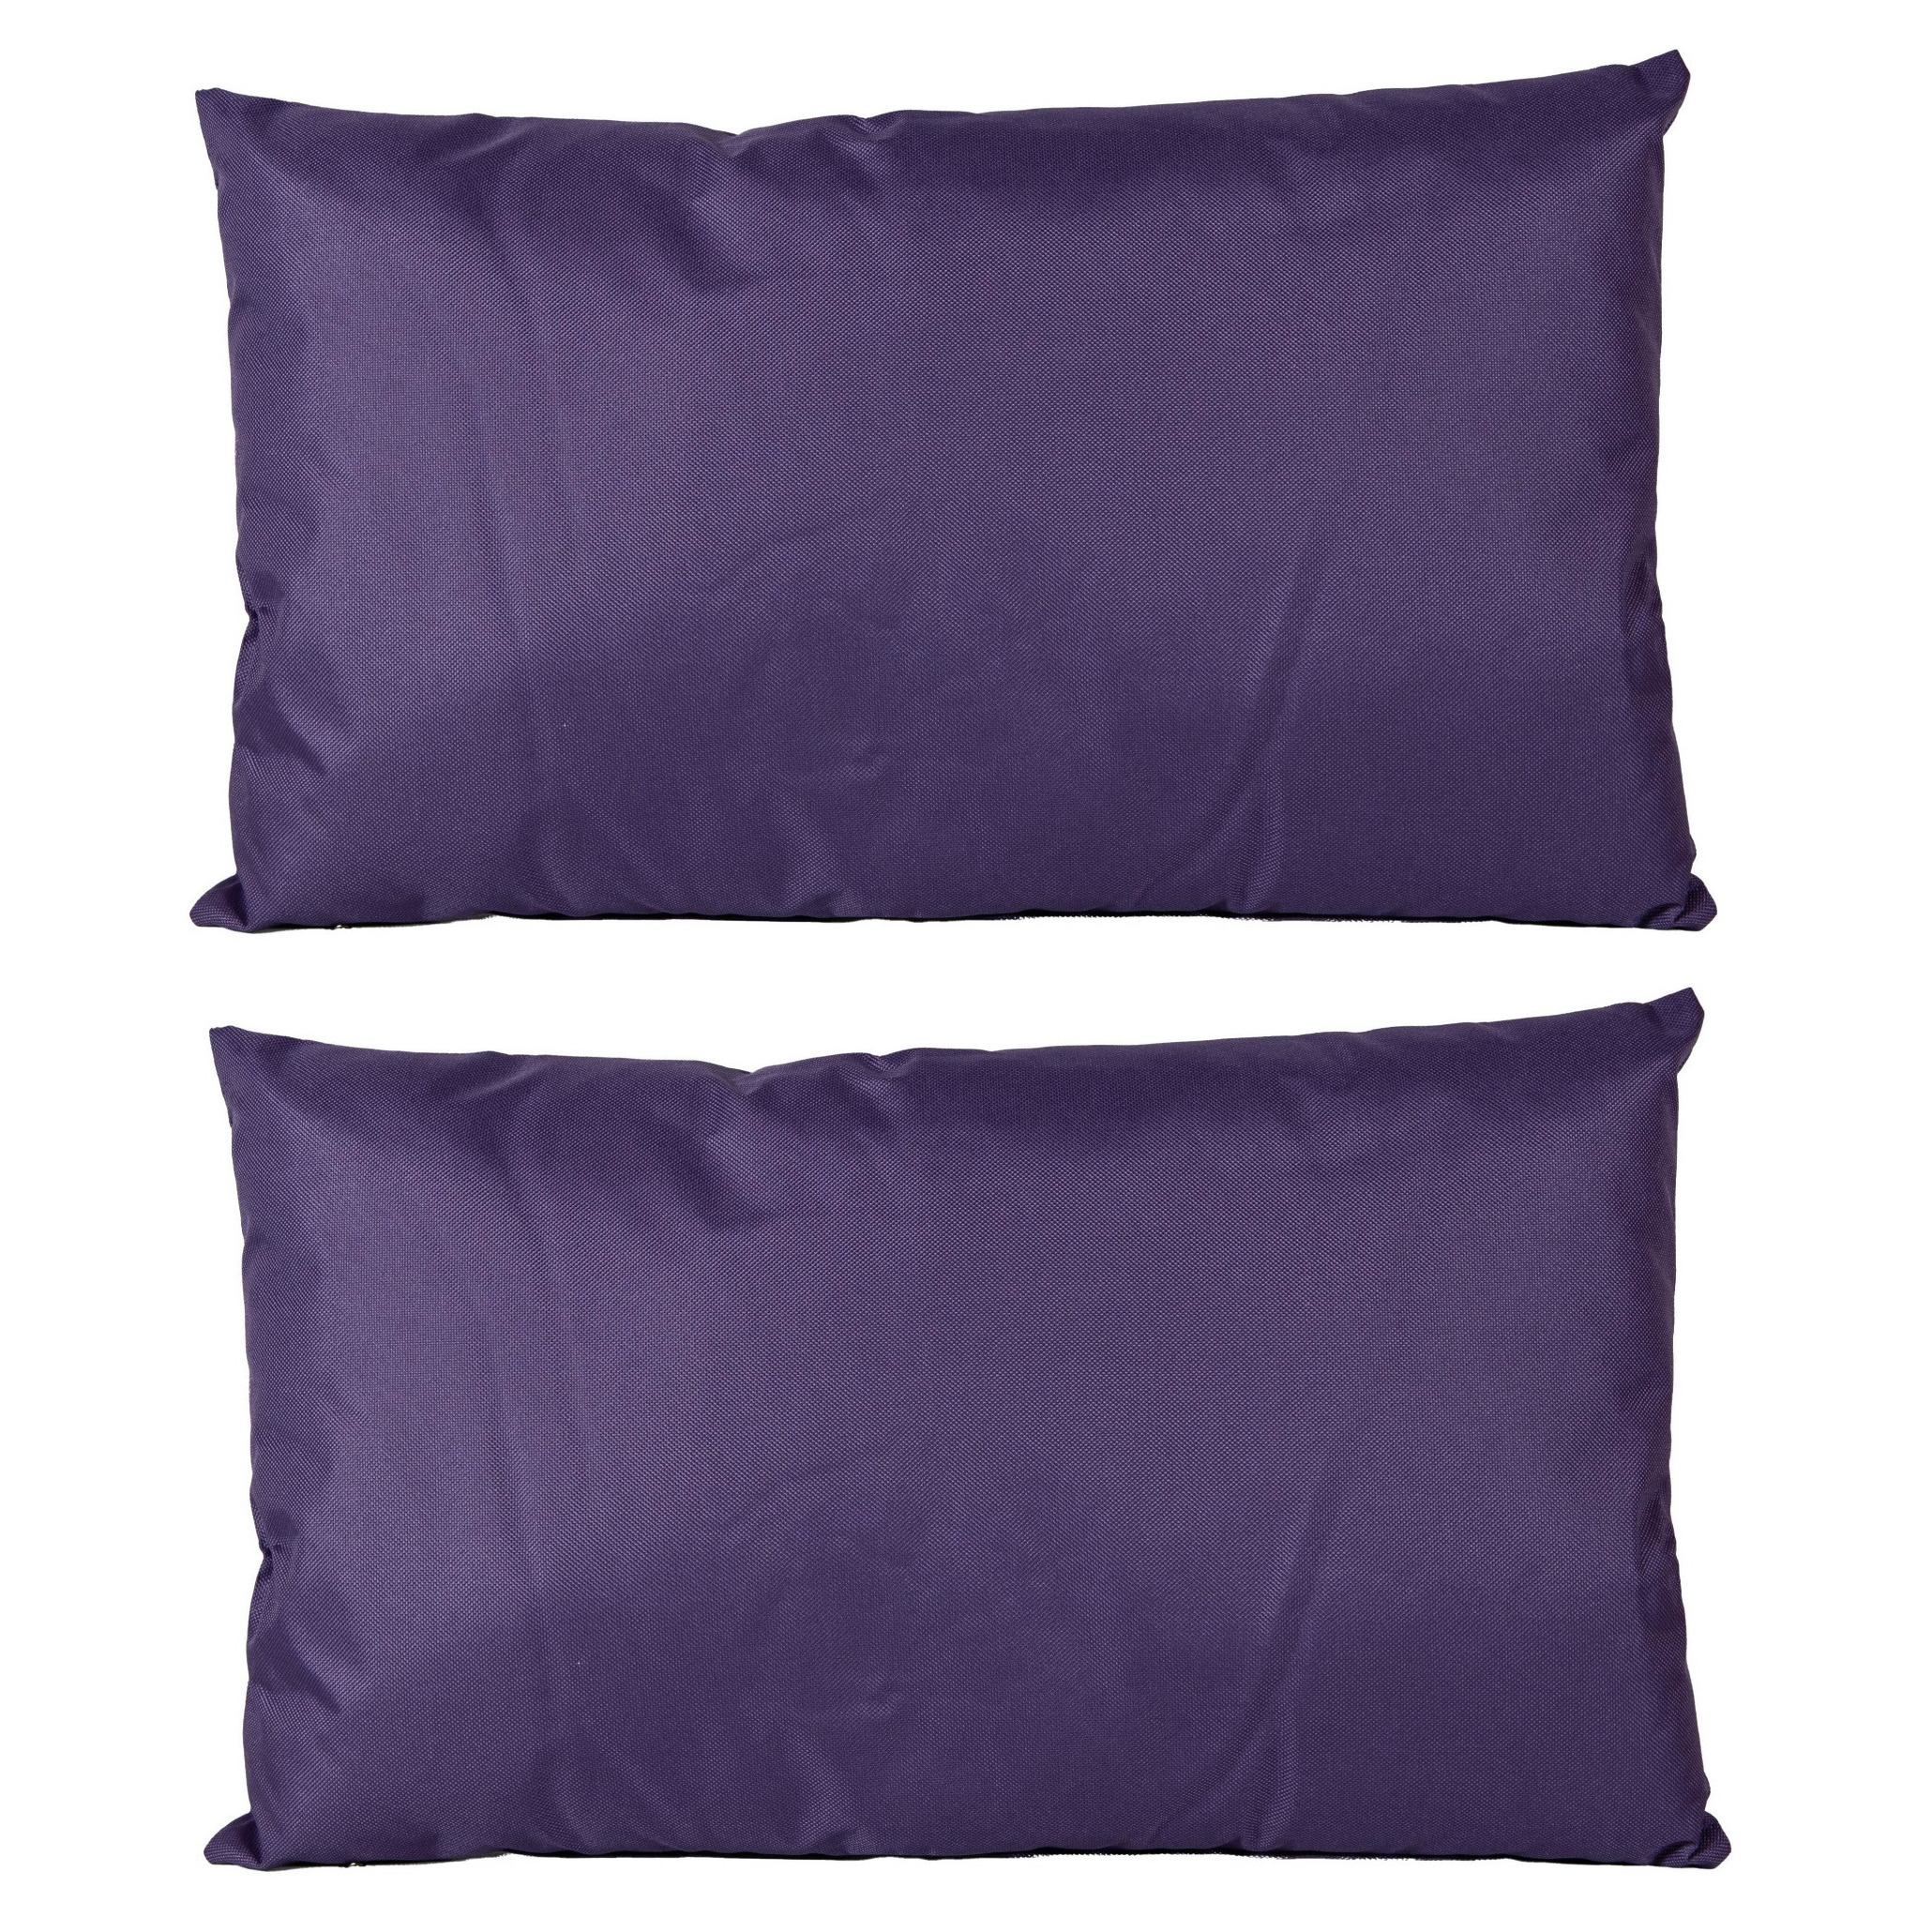 2x Bank-sier kussens voor binnen en buiten in de kleur paars 30 x 50 cm